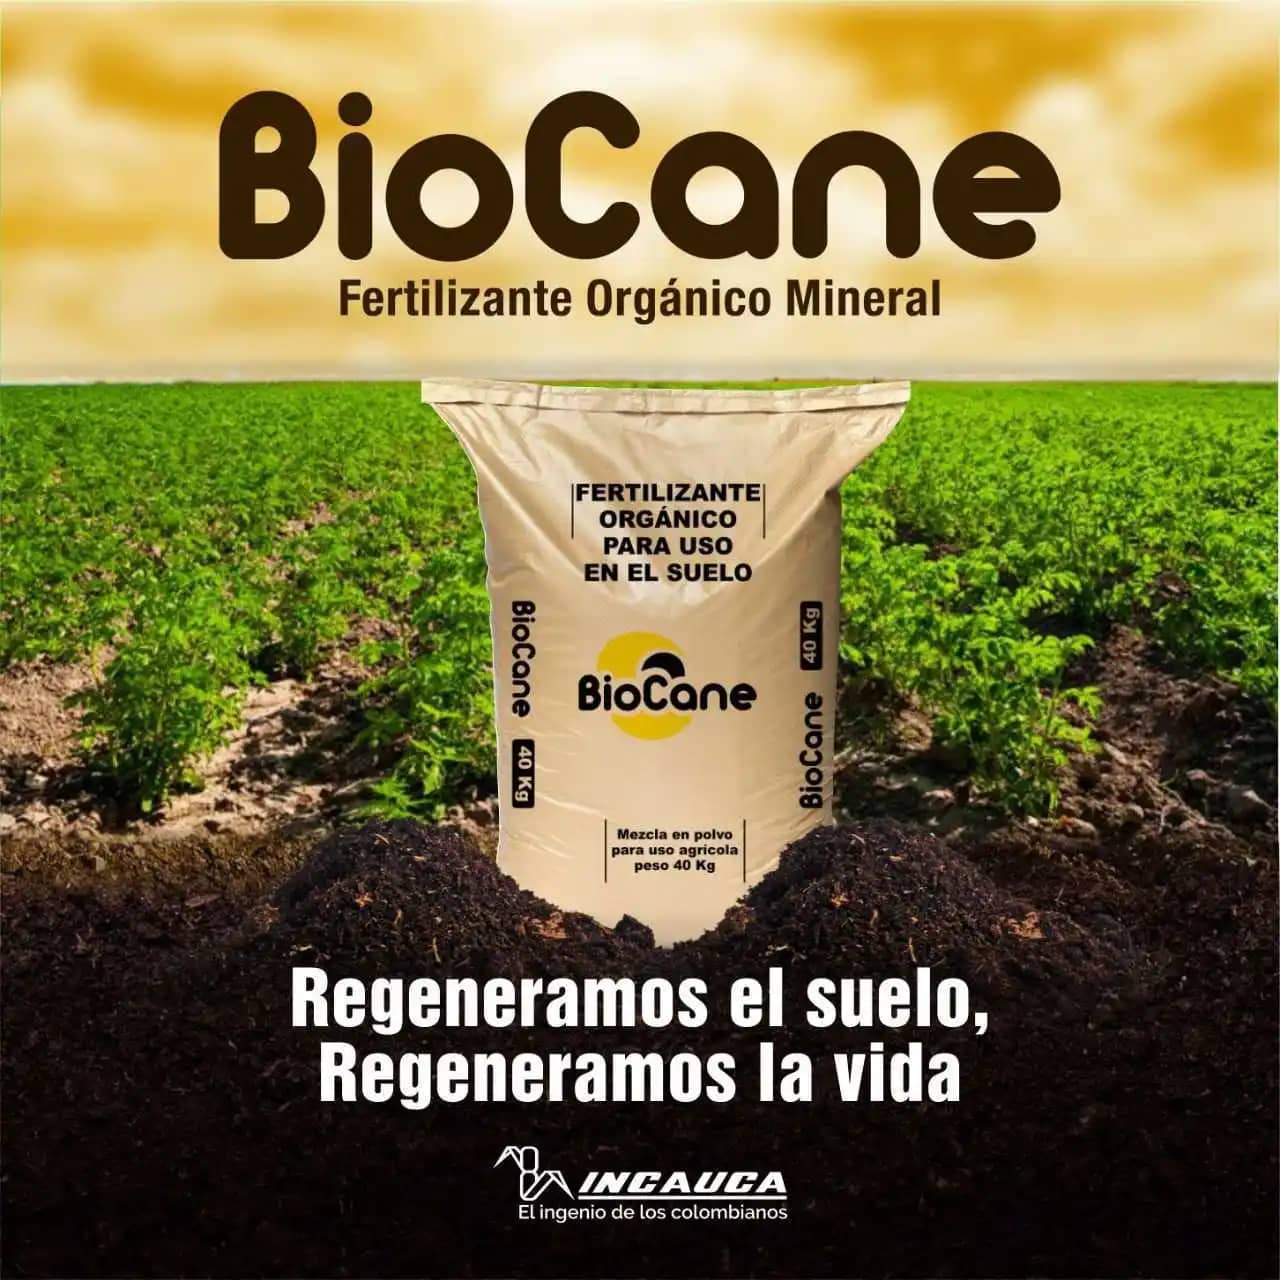 Fertilizante orgánico mineral Biocane